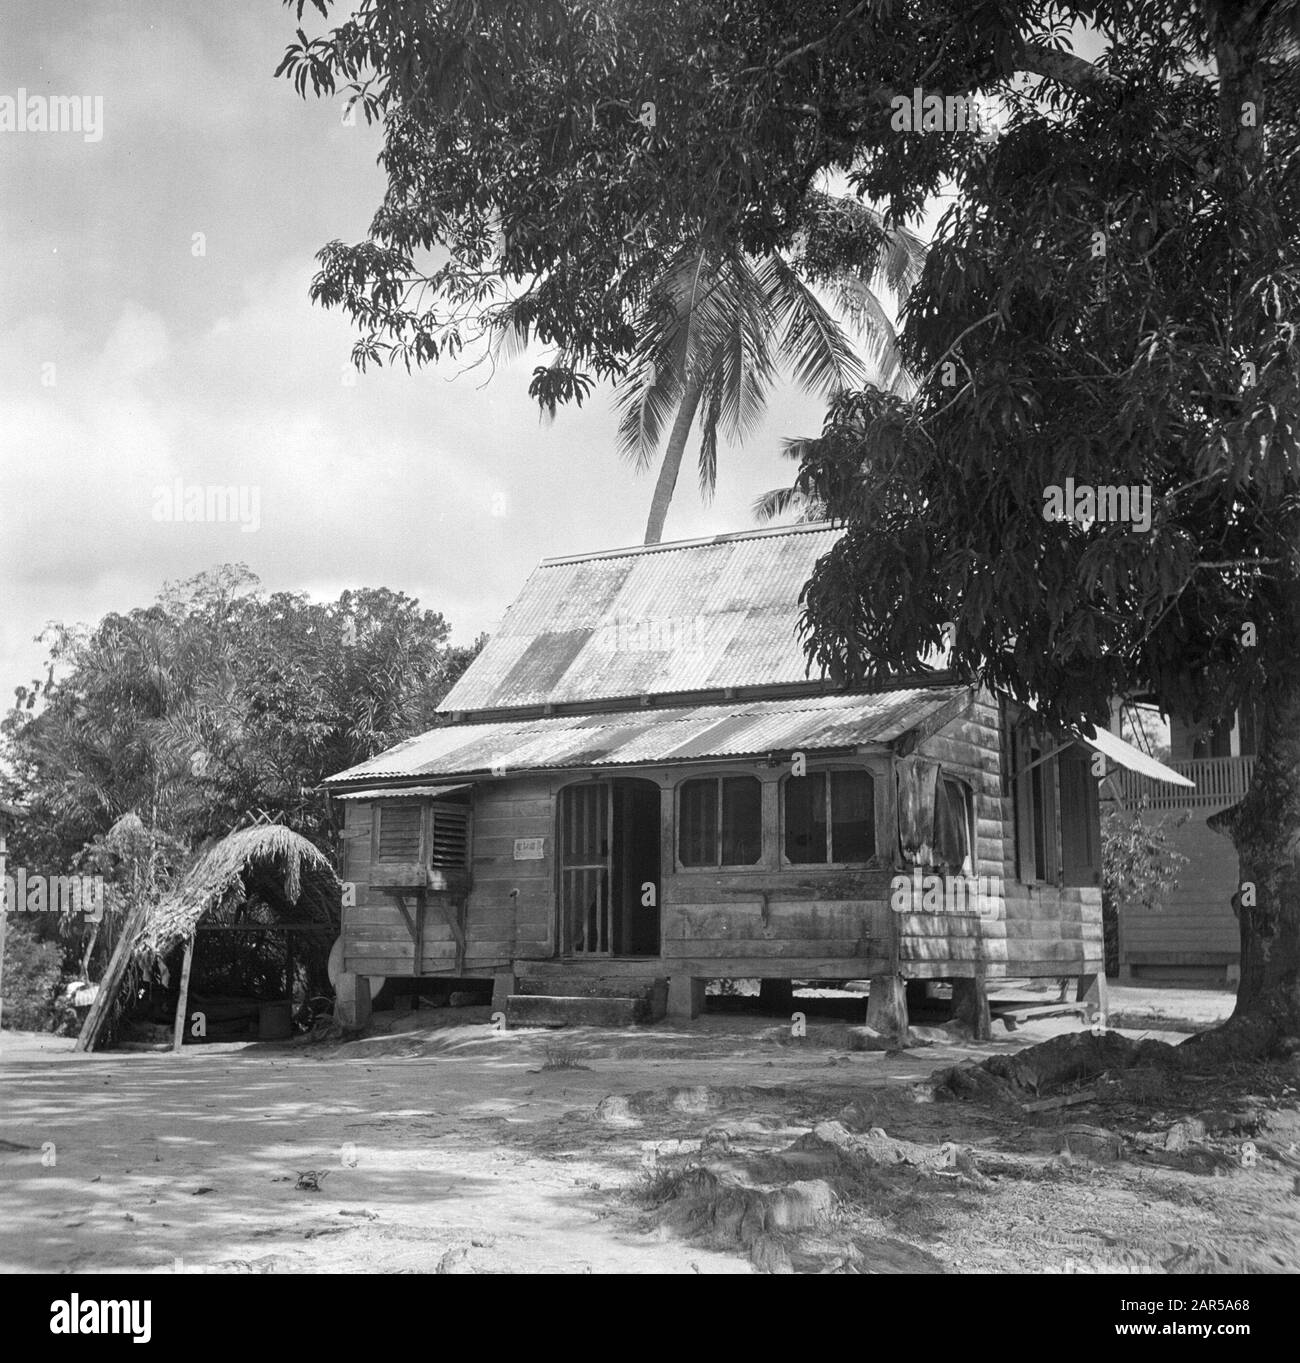 Viaggio in Suriname e le Antille Olandesi Casa nella foresta cristiana creole villaggio Ganzee Data: 1947 Località: Ganzee, Suriname Parole Chiave: Lana di foresta, case Foto Stock